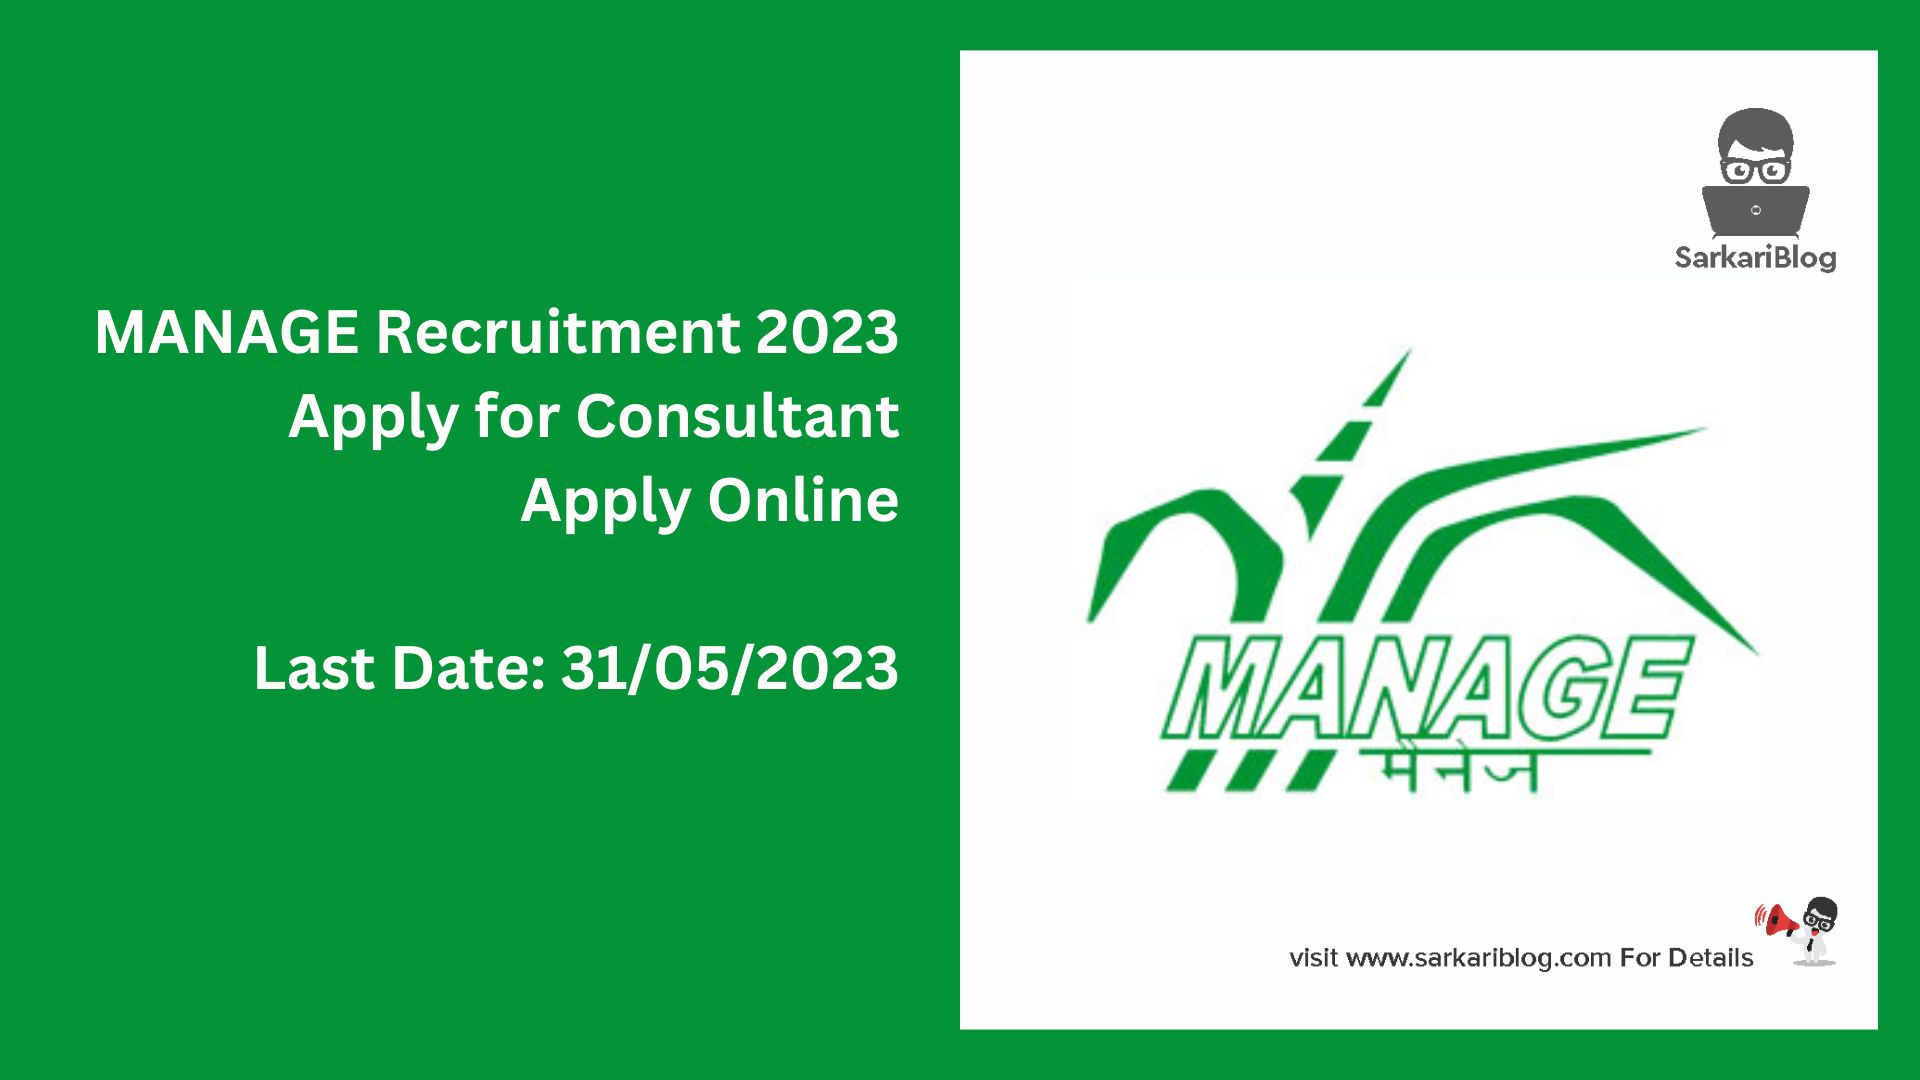 MANAGE Consultant Recruitment 2023